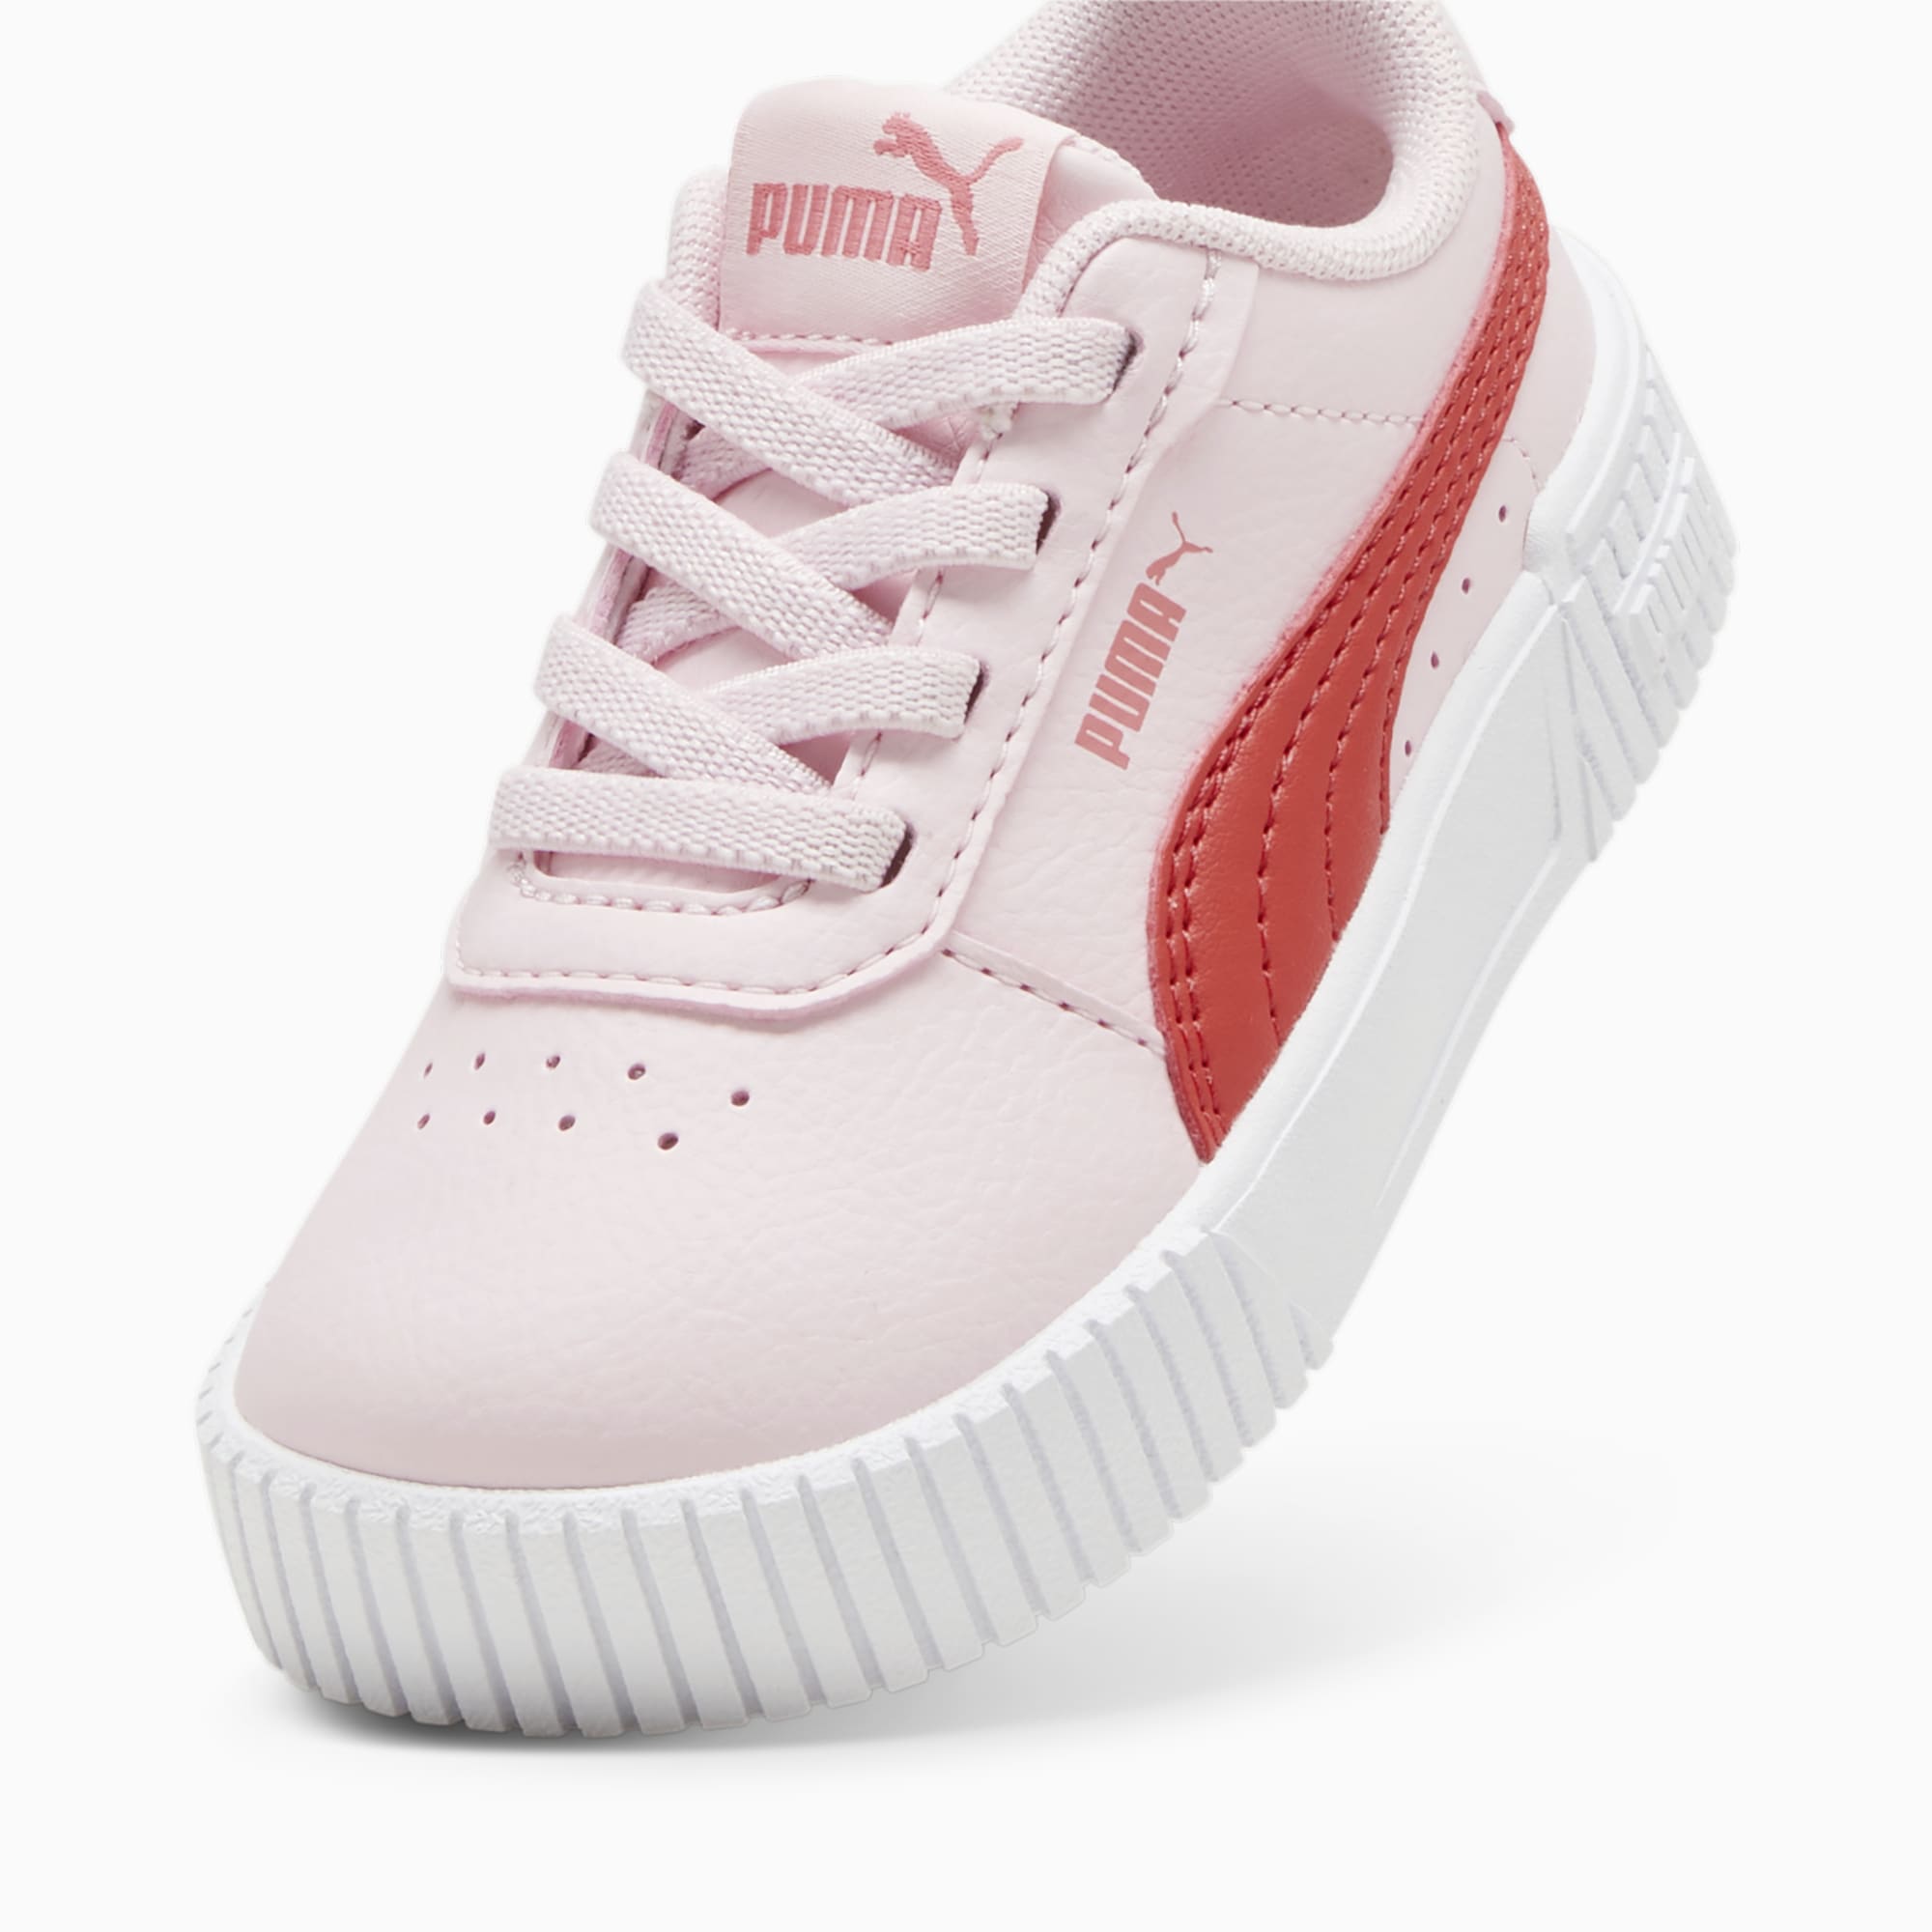 PUMA Niemowlęce Sneakersy Carina 2,0 AC, Biały / Czerwony